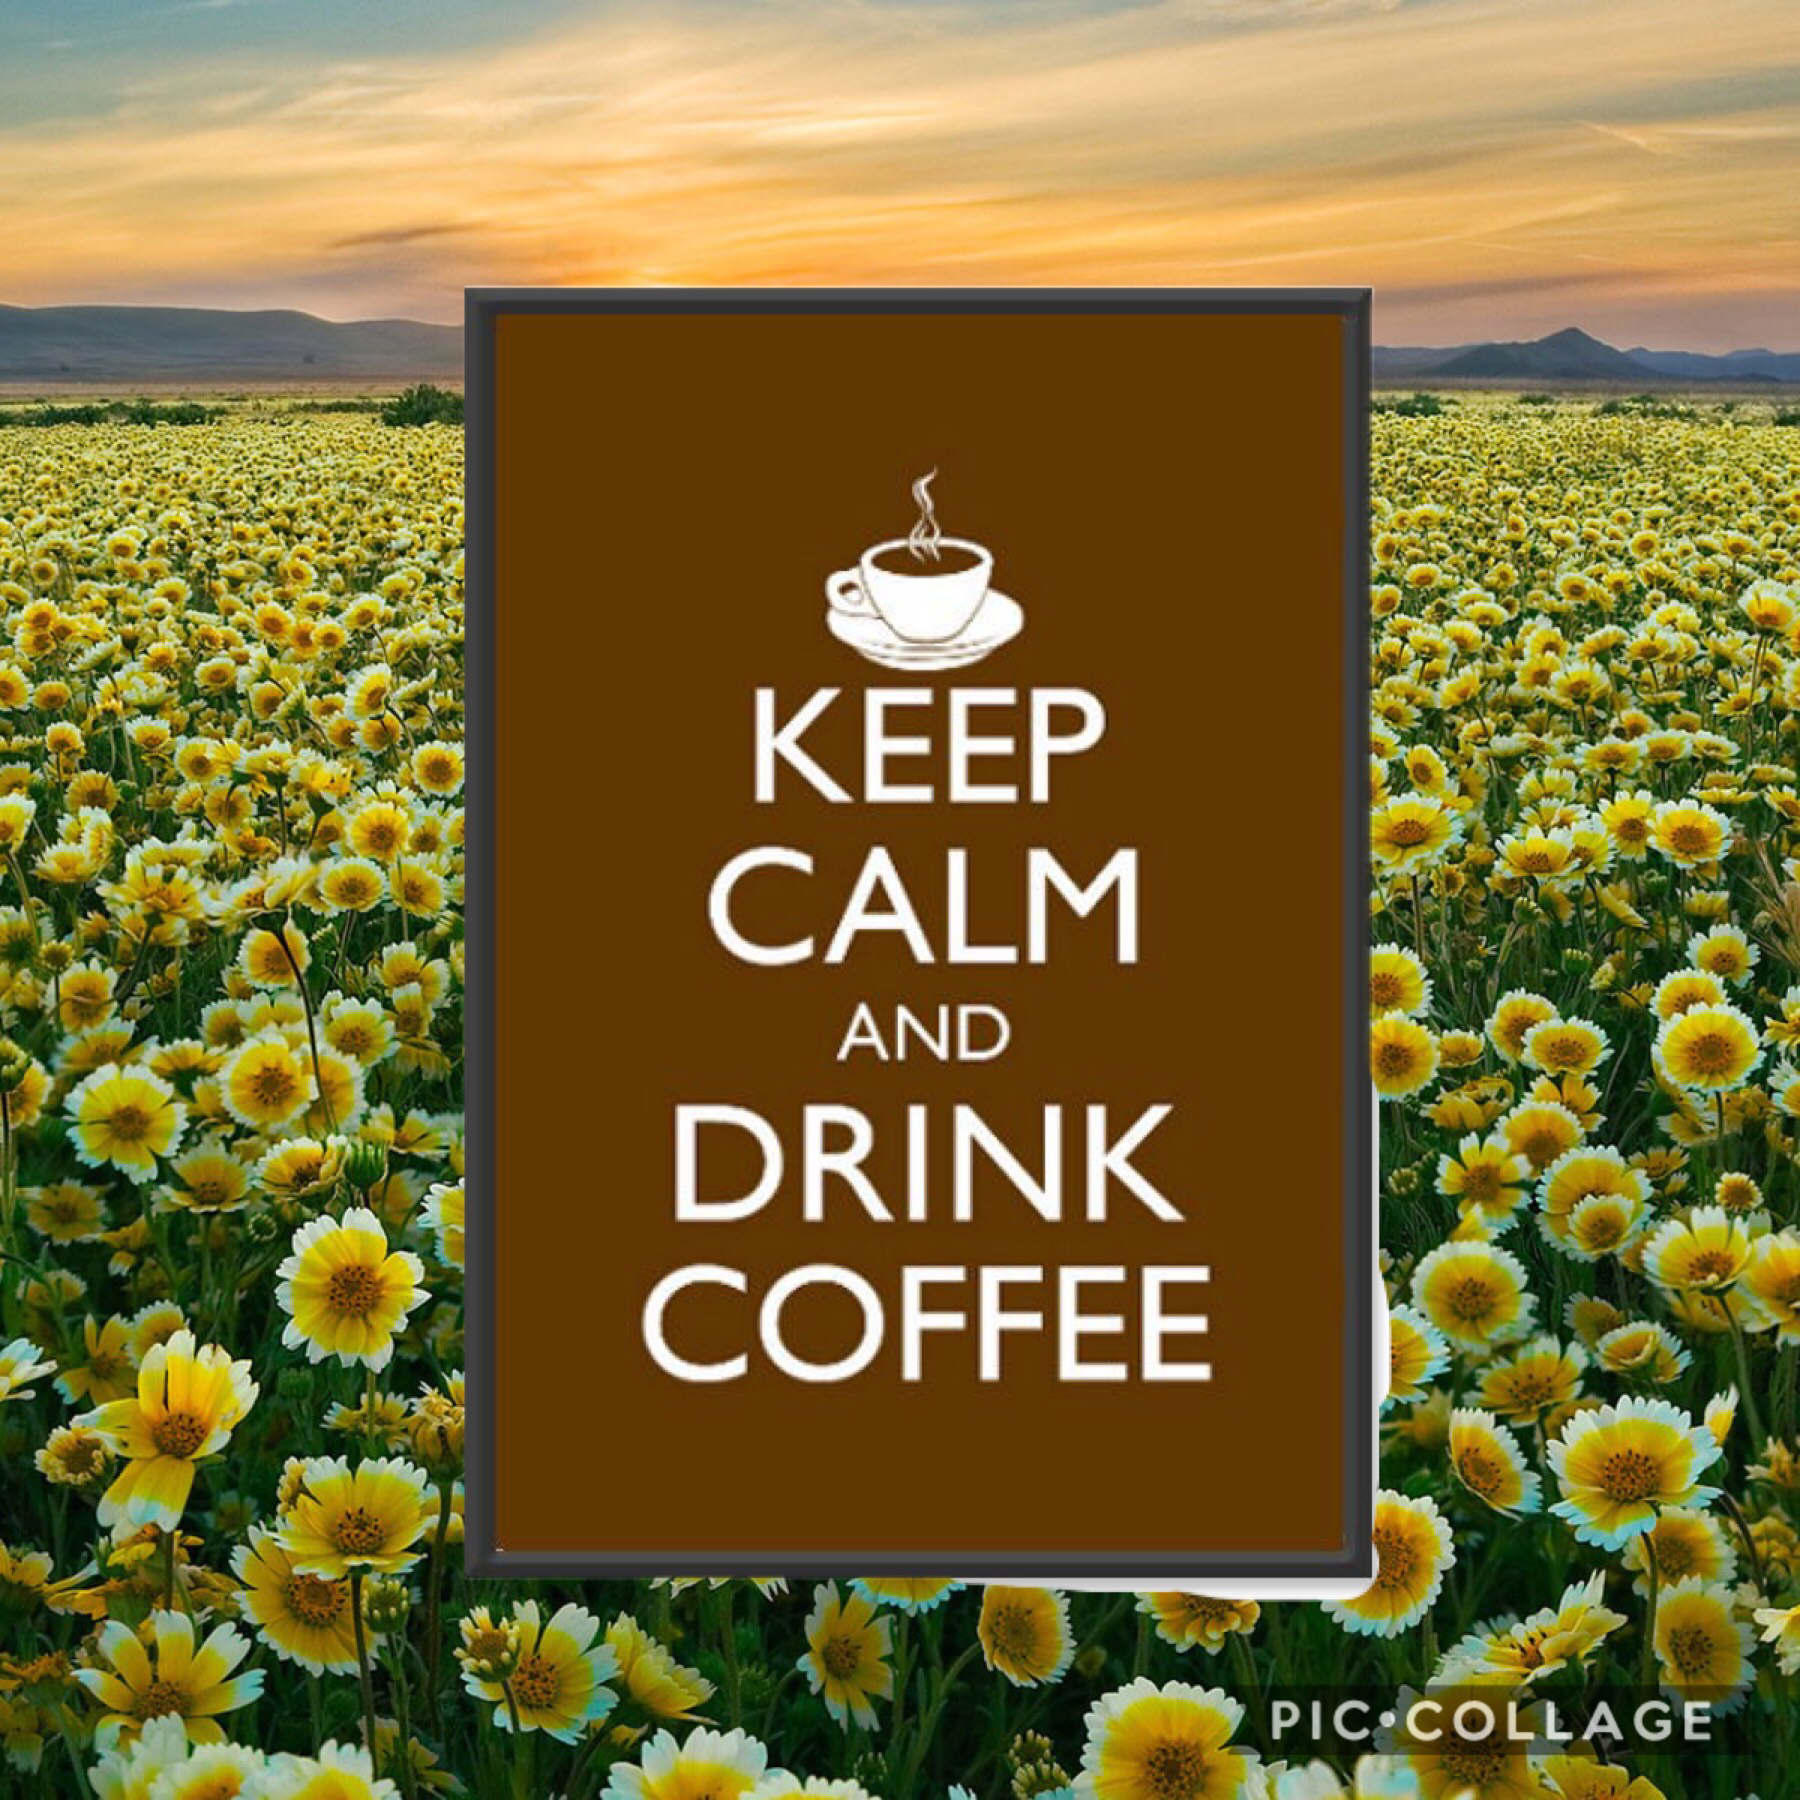 Keep calm and drink coffee ☕️!!!!!!